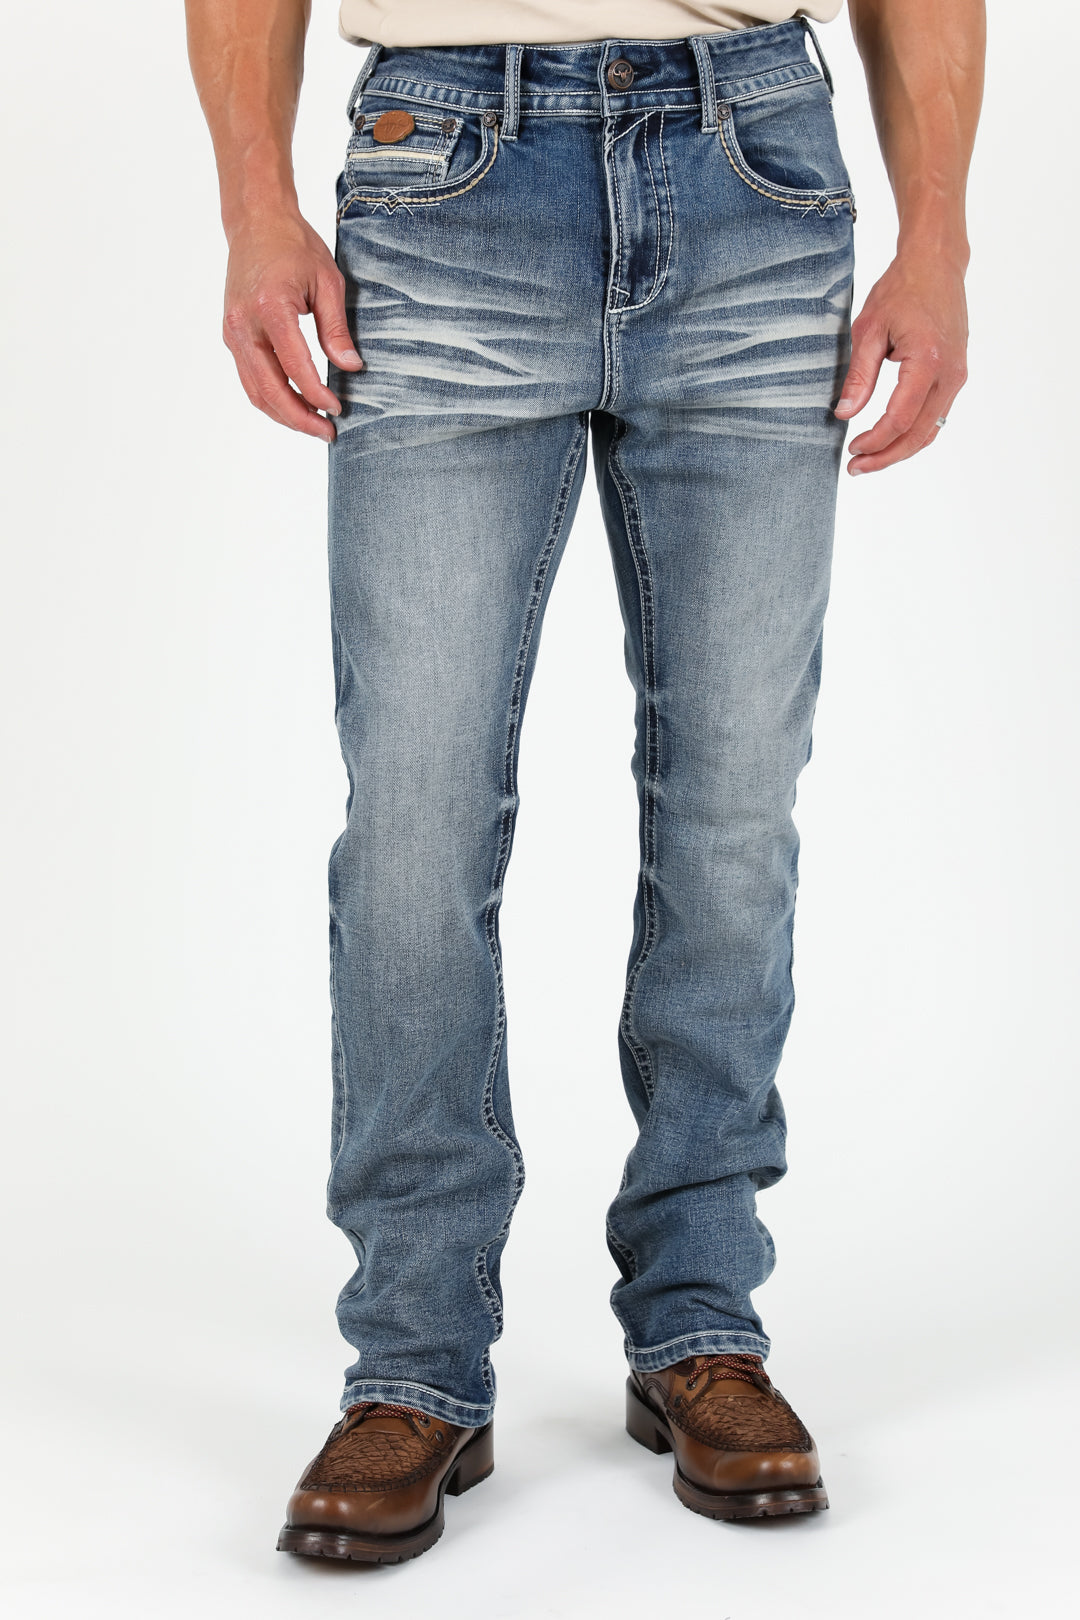 Holt Men's Blue Boot Cut Jeans